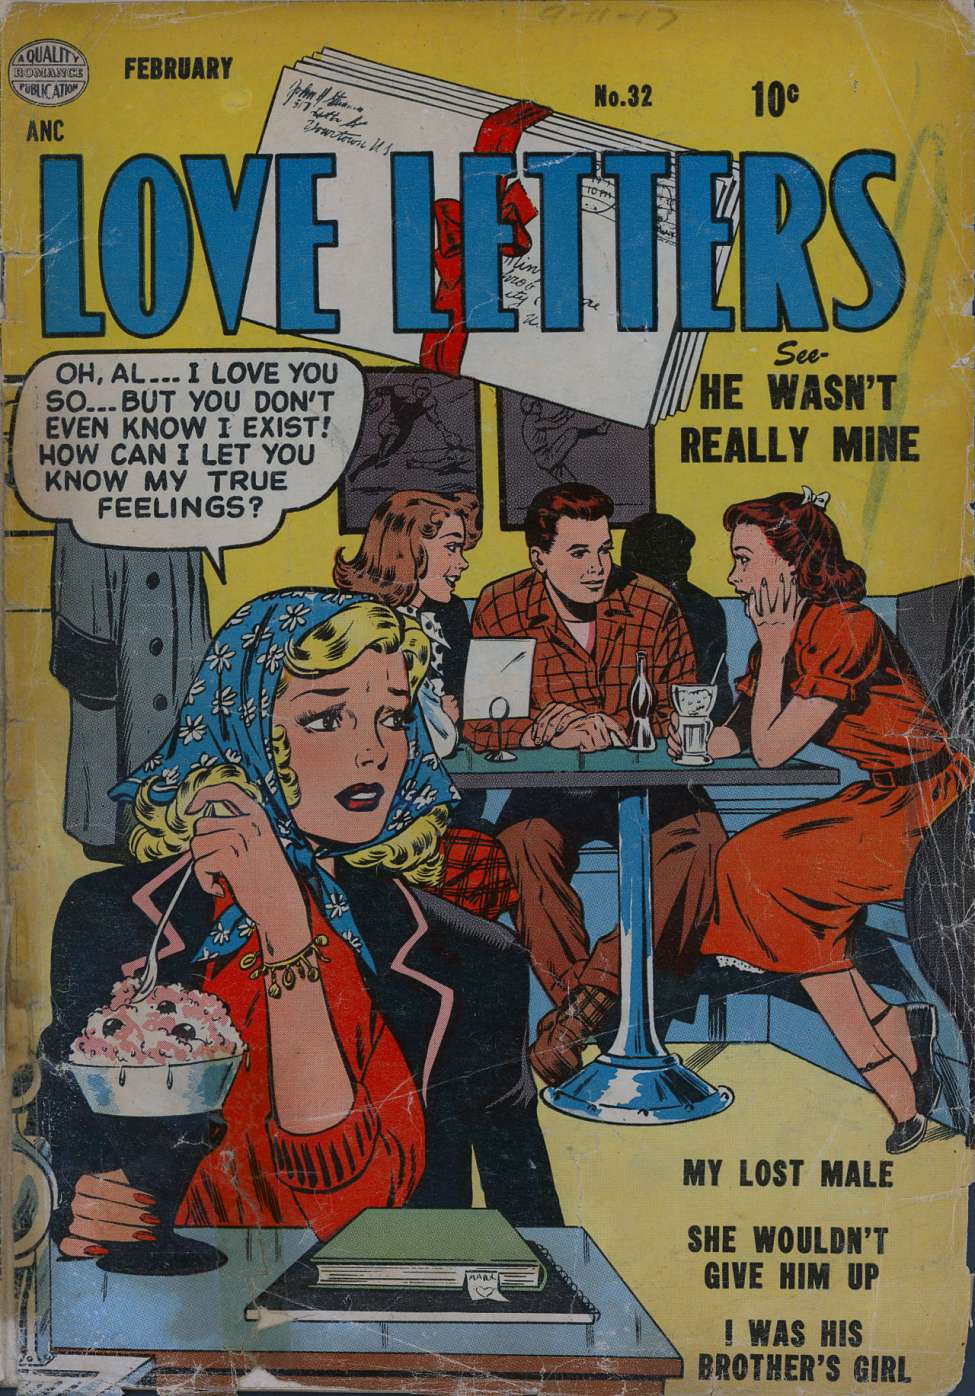 Love Letters #32, Quality Comics